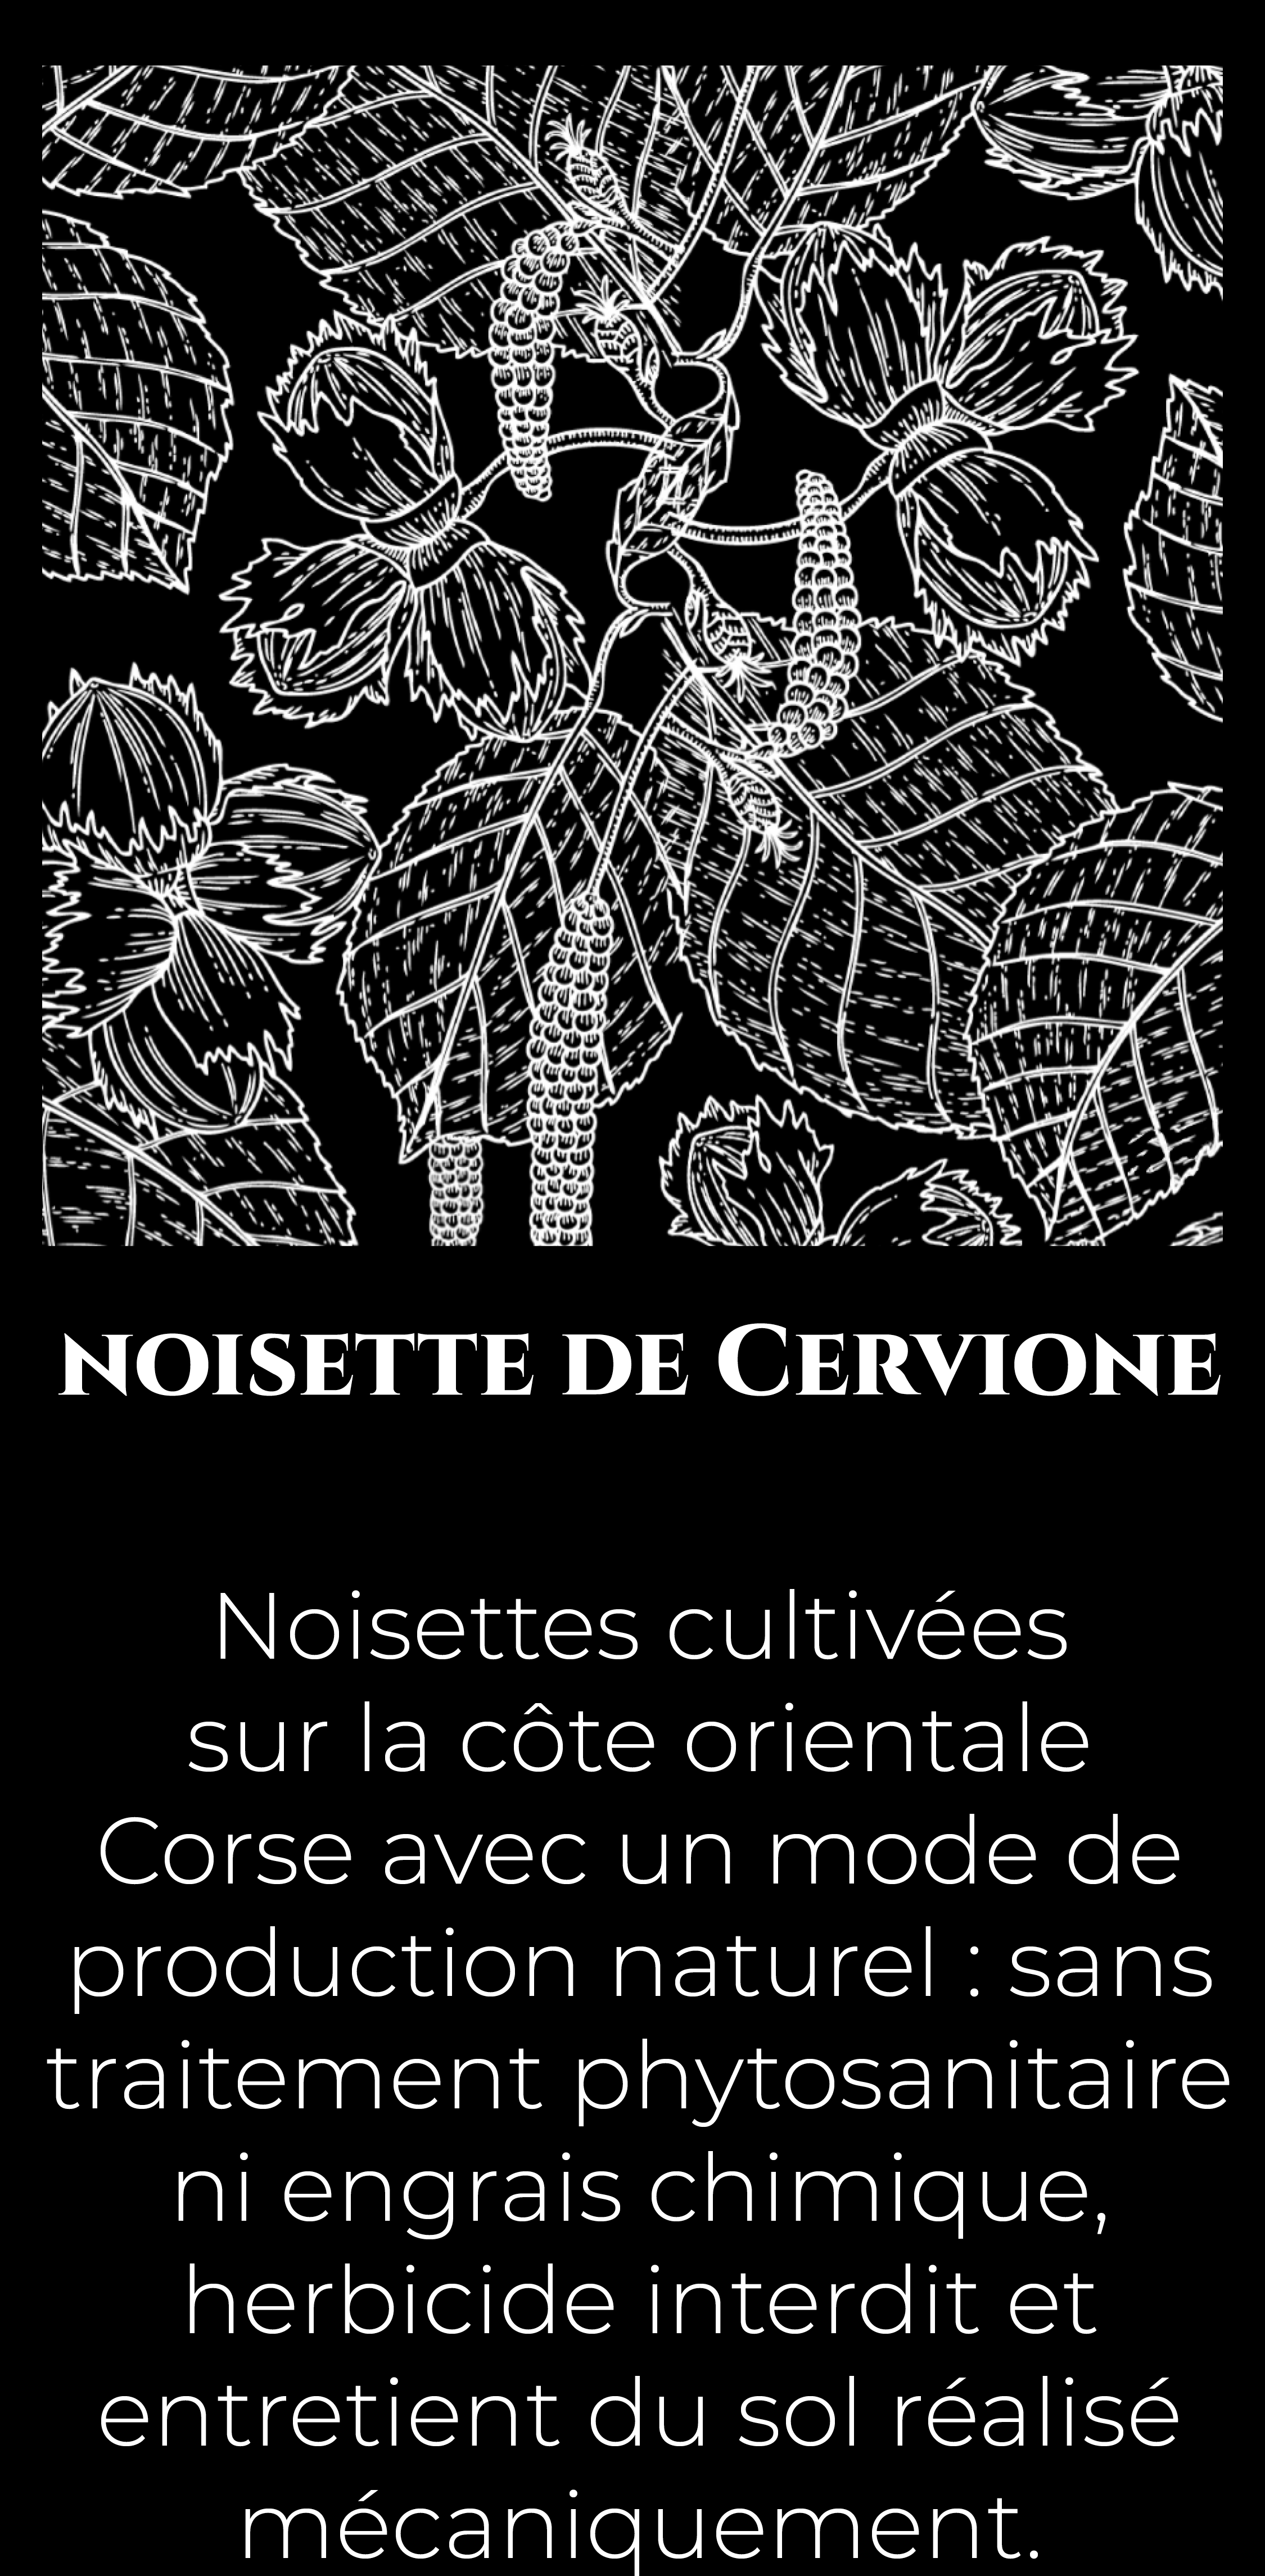 Illustration botanique de noisette avec un texte explicatif sur la noisette de Cervione IGP.